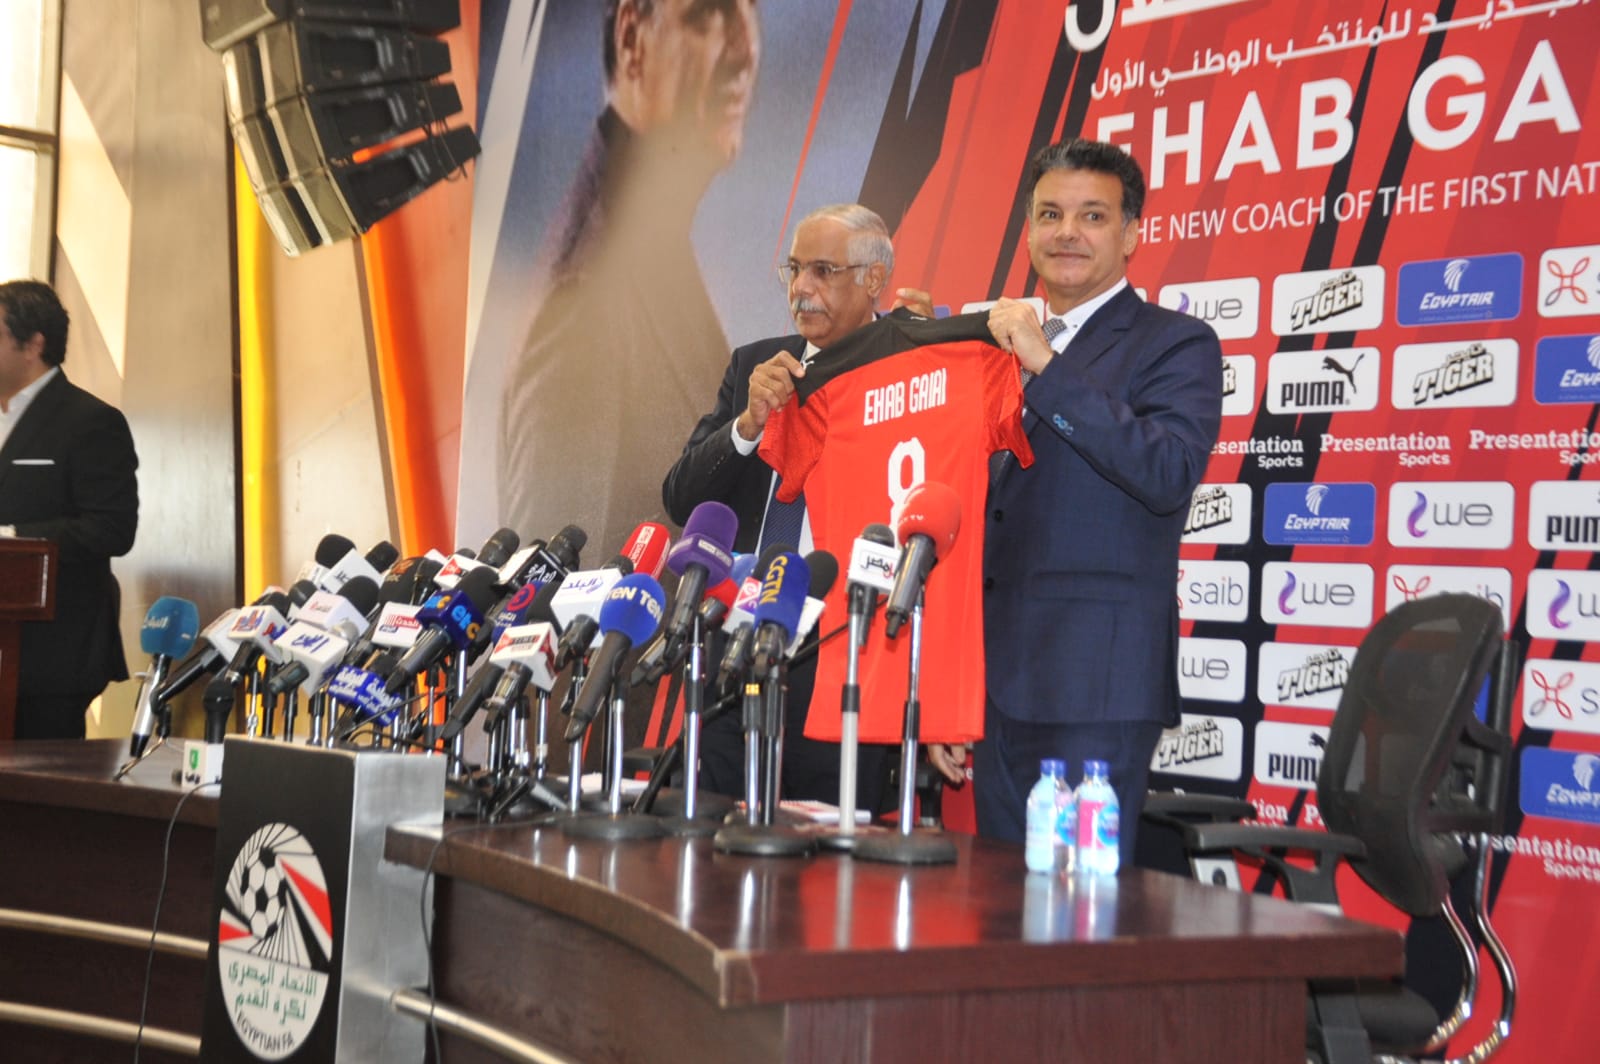 صورة تأكيدًا لكورة نيو | التشكيل الرسمي الجديد للمنتخب المصري لكرة القدم تحت قيادة إيهاب جلال